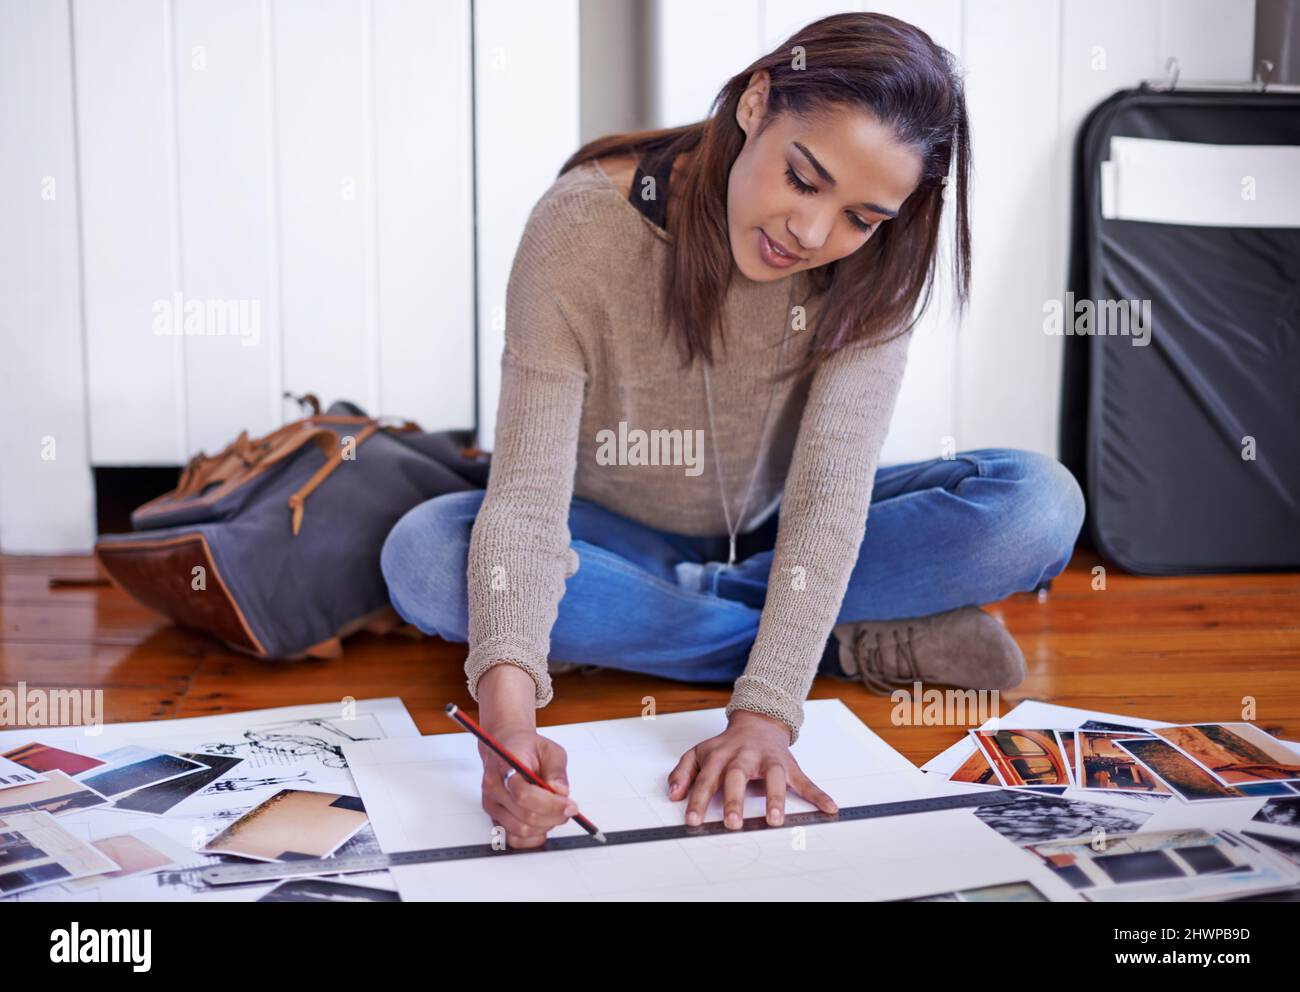 Arbeiten an der Entwicklung ihres Portfolios. Eine junge Frau, die zu Hause an ihrem Portfolio arbeitet. Stockfoto